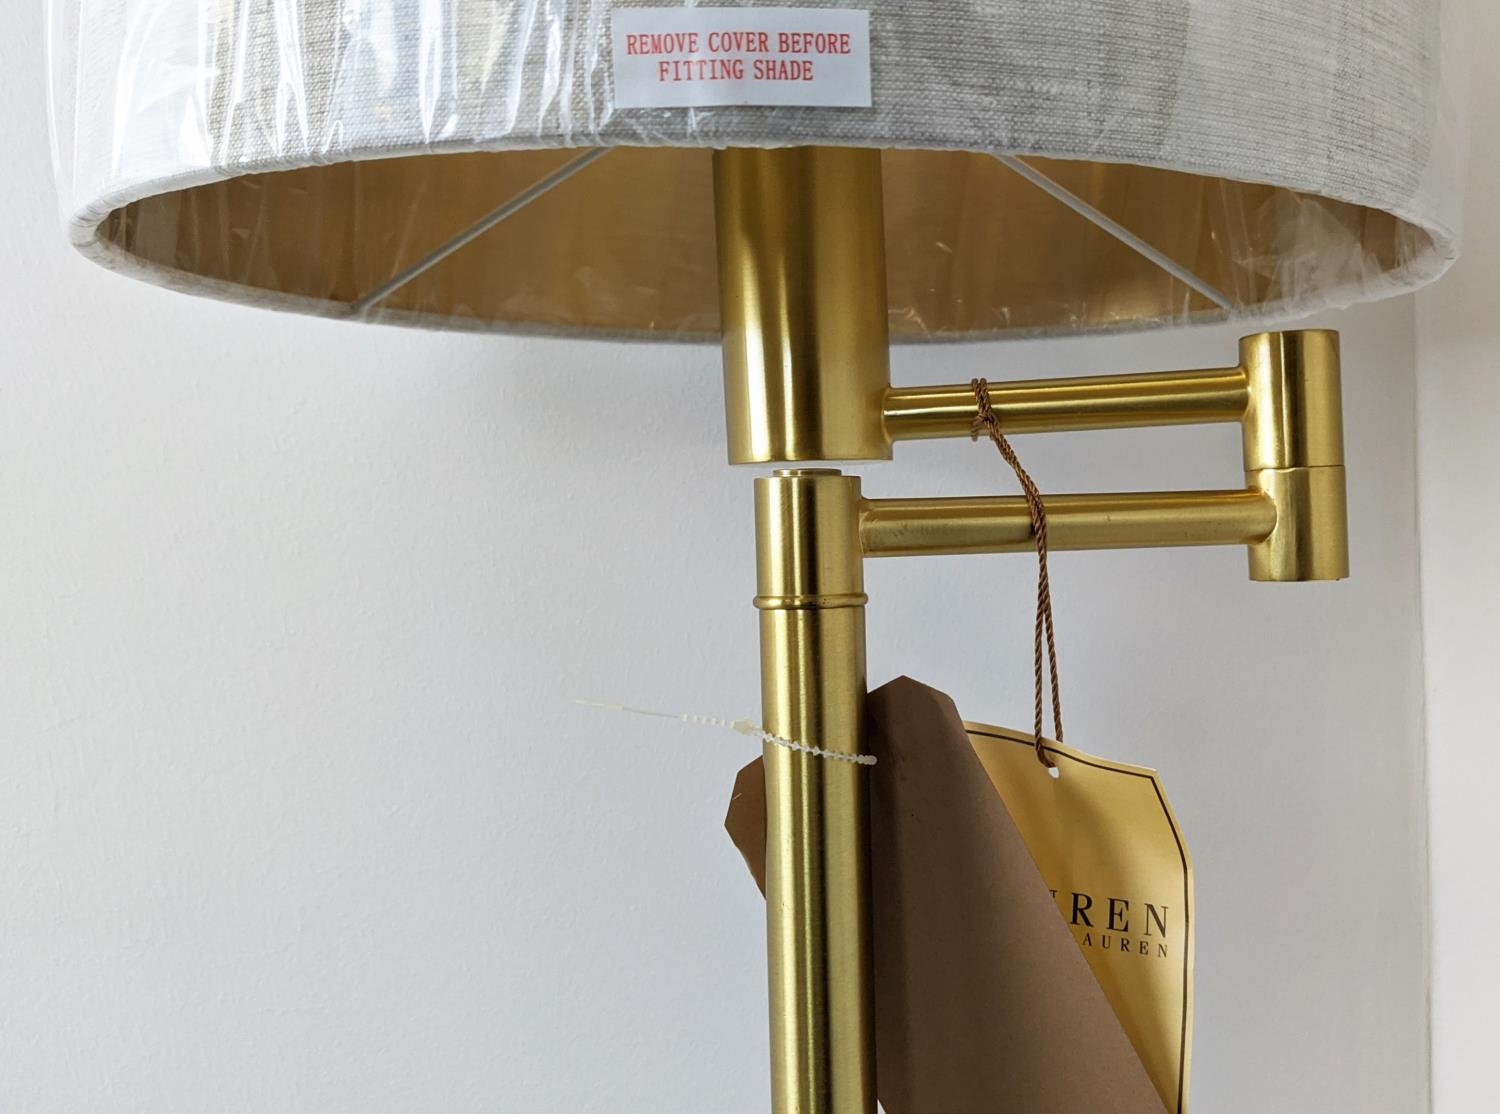 LAUREN RALPH LAUREN HOME FLOOR LAMP, gilt metal, with shade, 143cm H. - Image 4 of 5